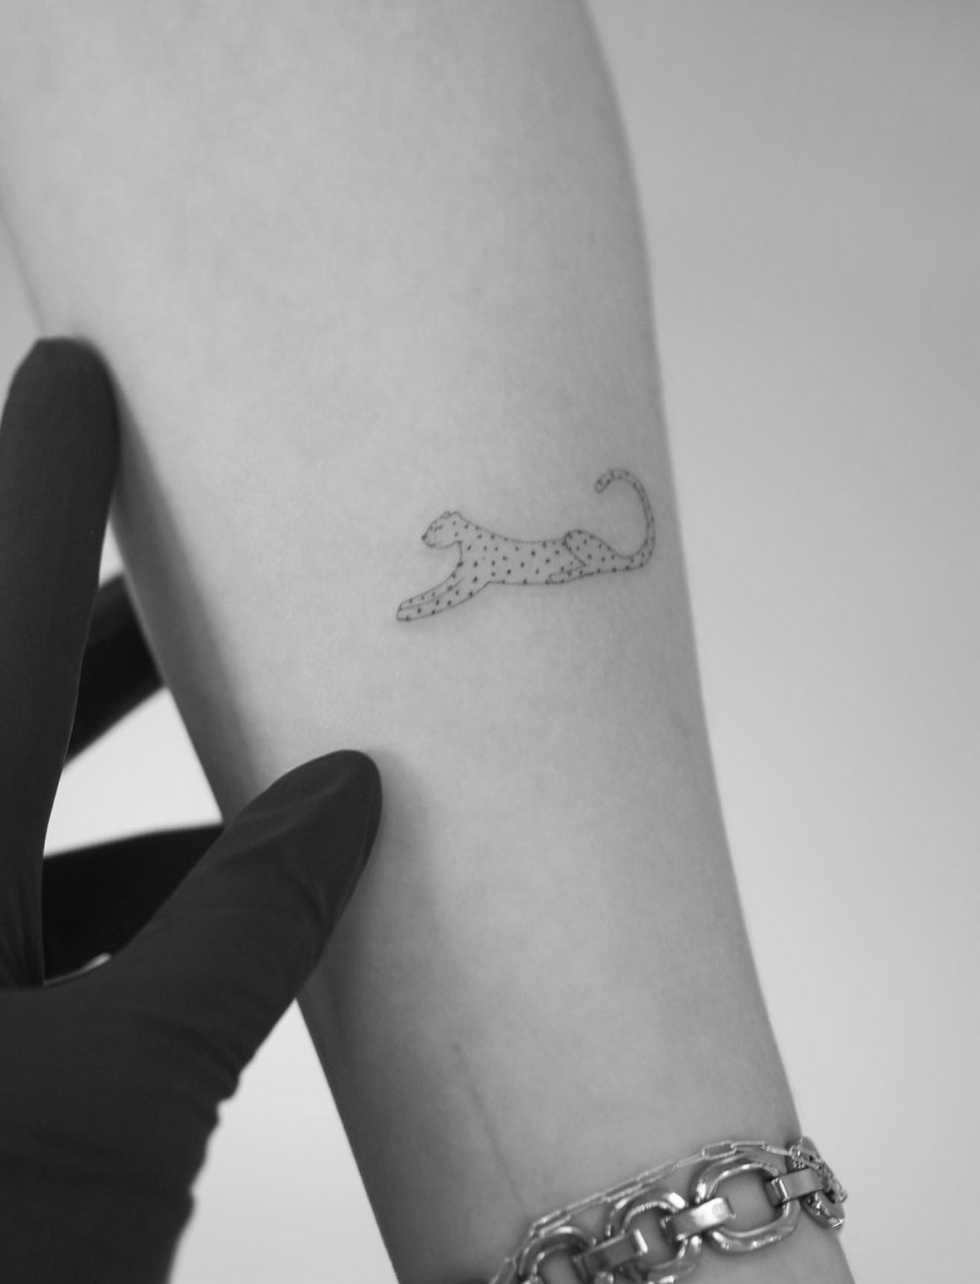 Leopard tattoo